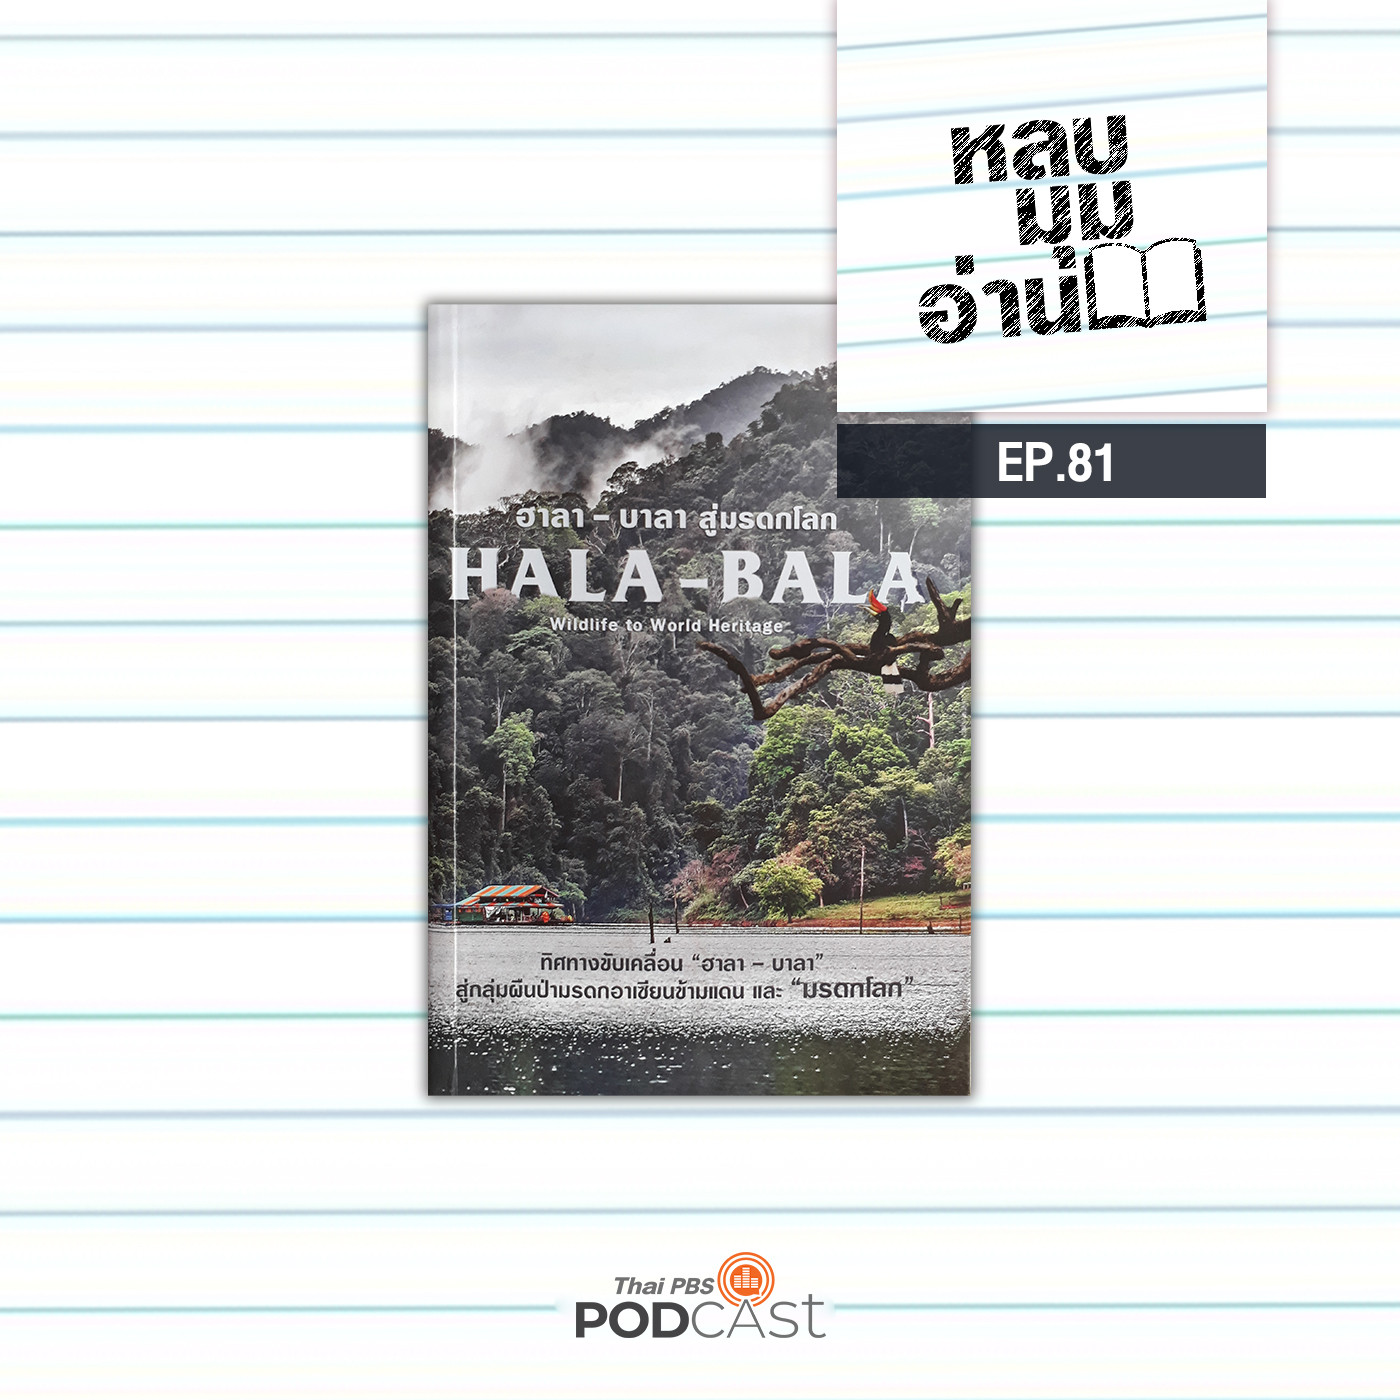 หลบมุมอ่าน EP. 81: ฮาลา-บาลา “มรดกอาเซียนข้ามแดน”